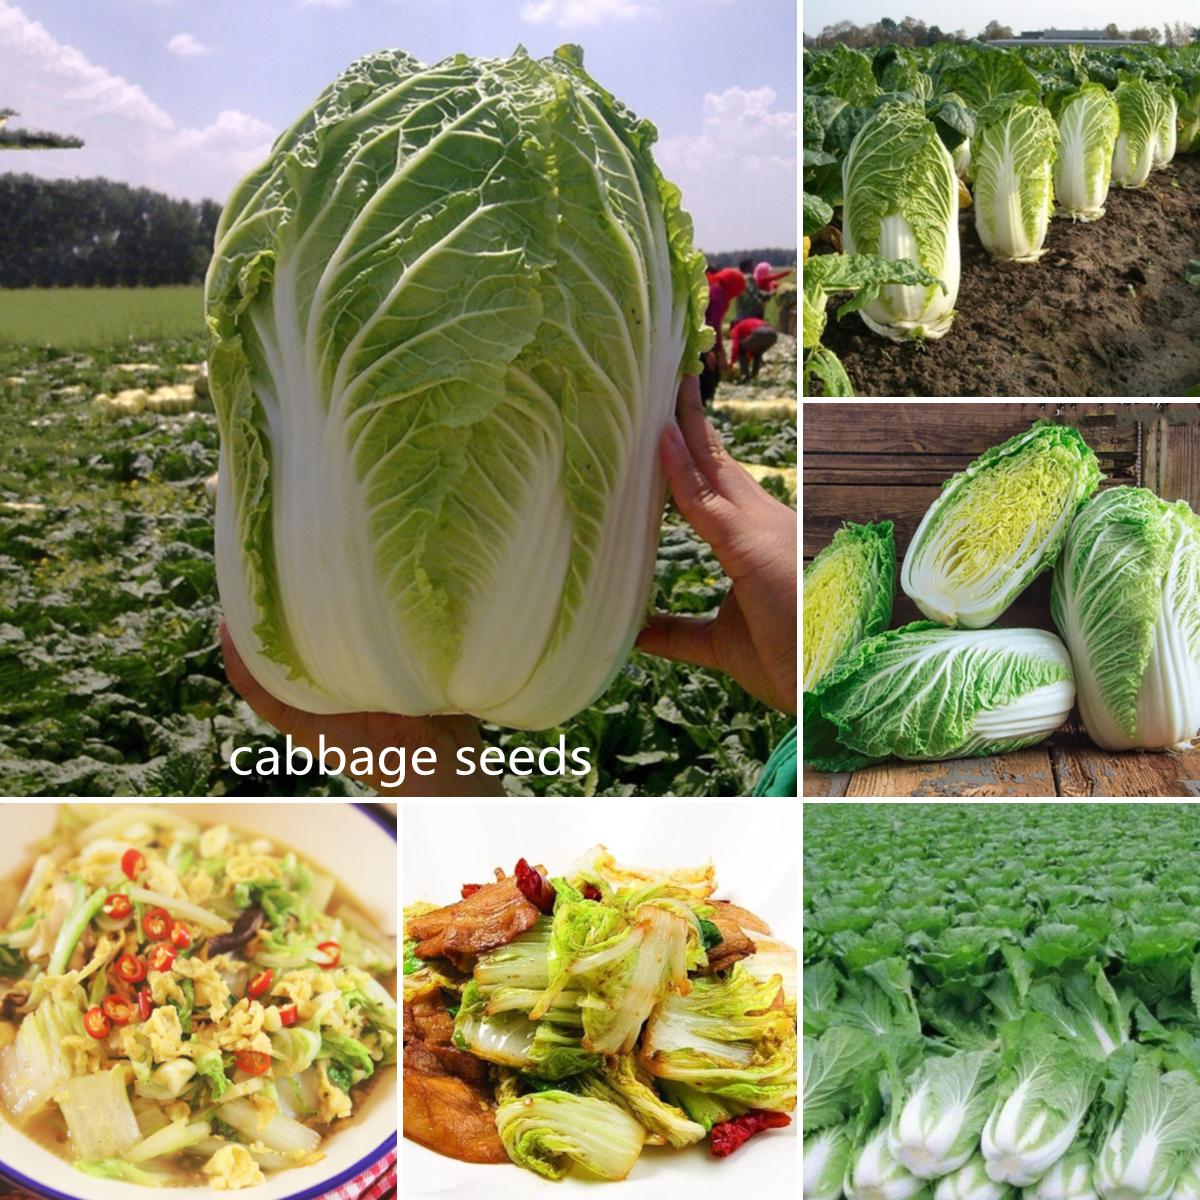 ปลูกง่าย ปลูกได้ทั่วไทย ของแท้ 100 0pcs เมล็ดผักกาดขาวจีน Cabbage Seeds Green Vegetable Seeds เต็มไปด้วยคุณค่าทางโภชนาการ เมล็ดพันธุ์ผัก ผักสวนครัว，vegetable Seeds for Gardening เมล็ดผัก เมล็ดพืช ผักสวนครั เมล็ดพันธุ์พืช เมล็ดดอกไม้ Plants